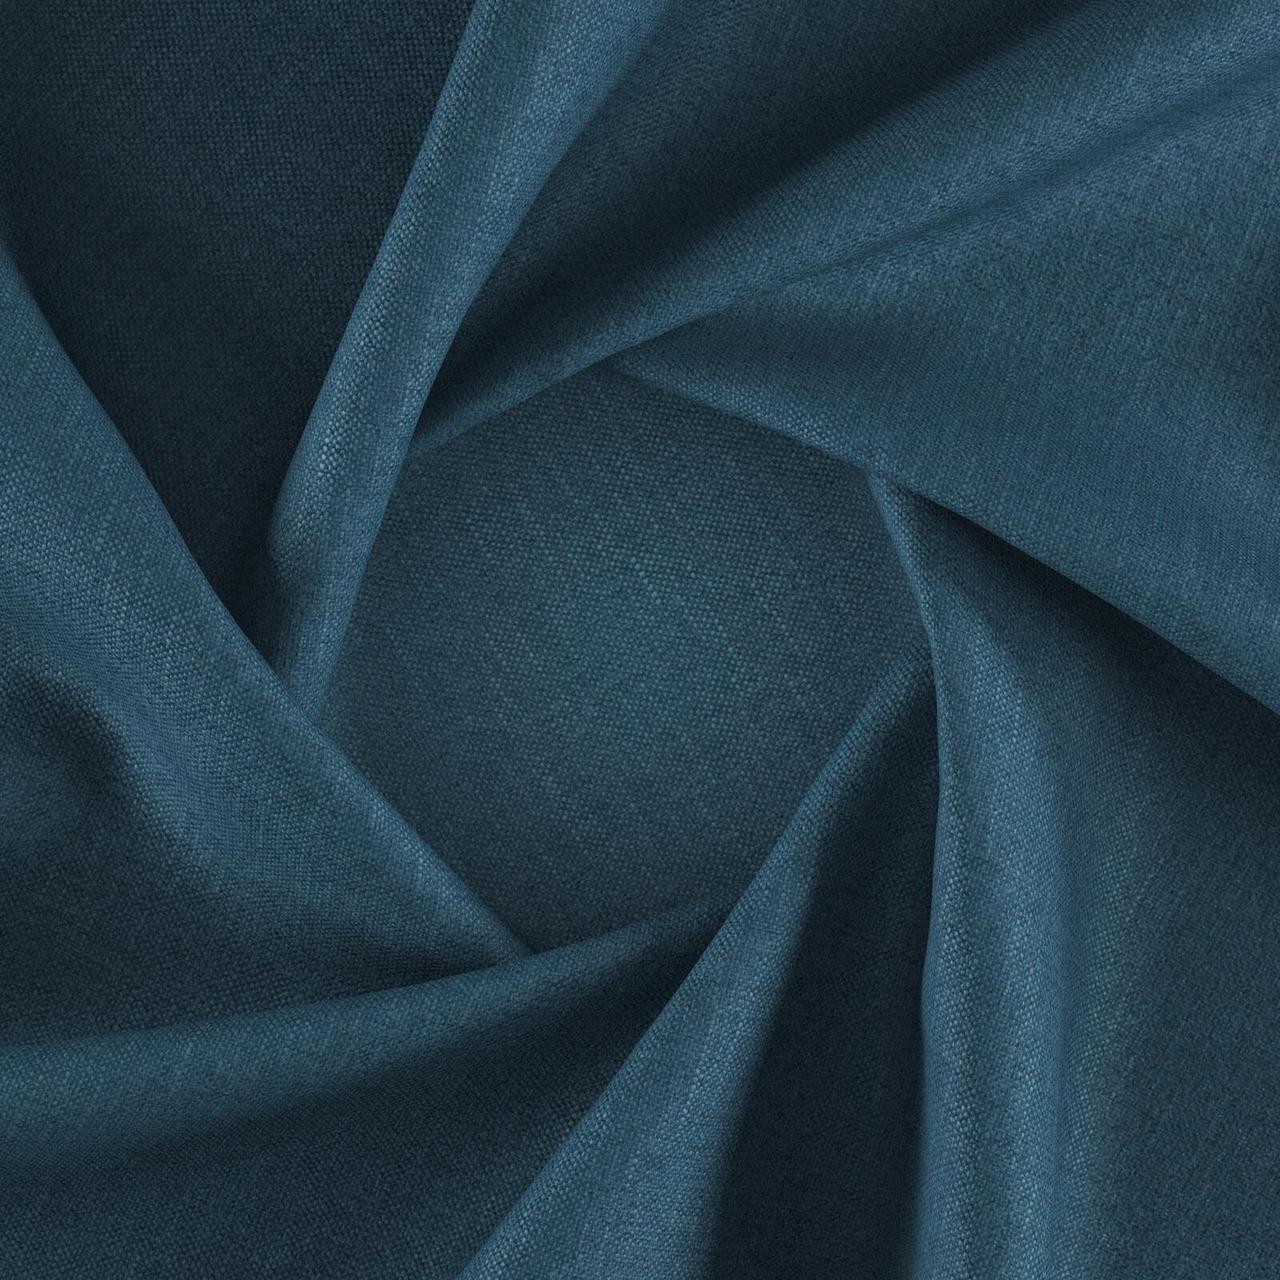 Тканина для перетяжки м'яких меблів шеніл Перфекто (Perfecto) кольору морської хвилі